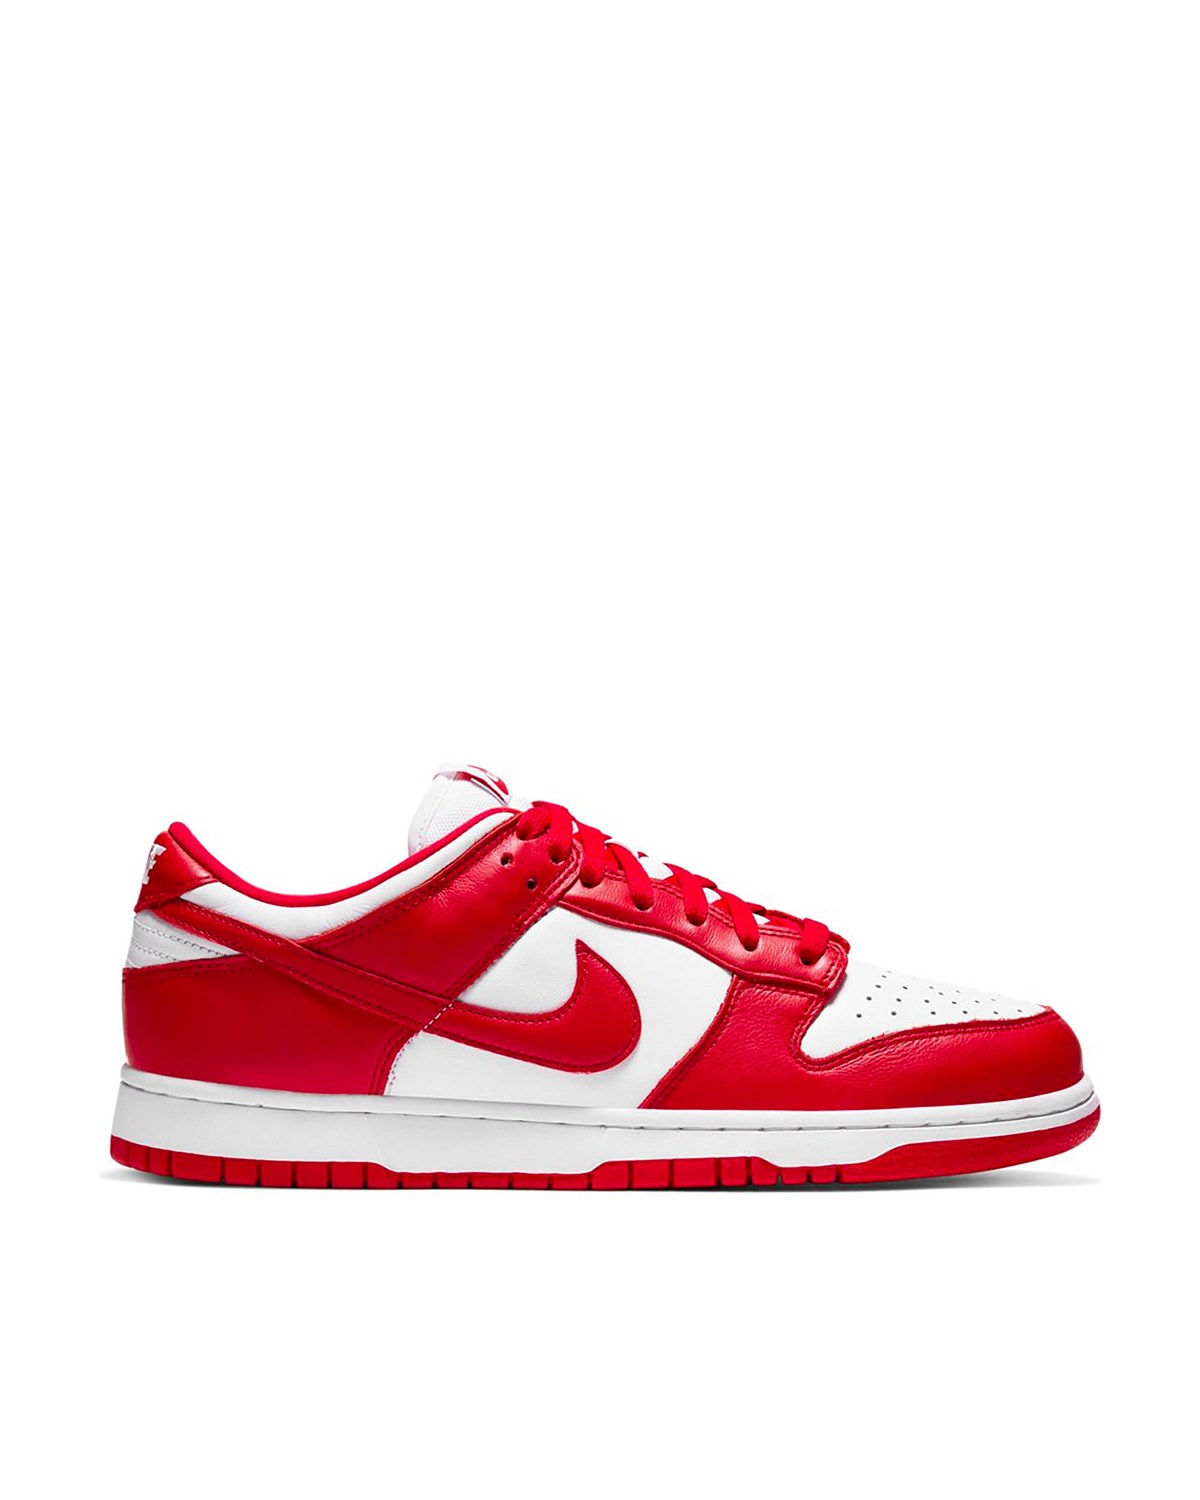 Dunk Low SP Nike Footwear Sneakers Red